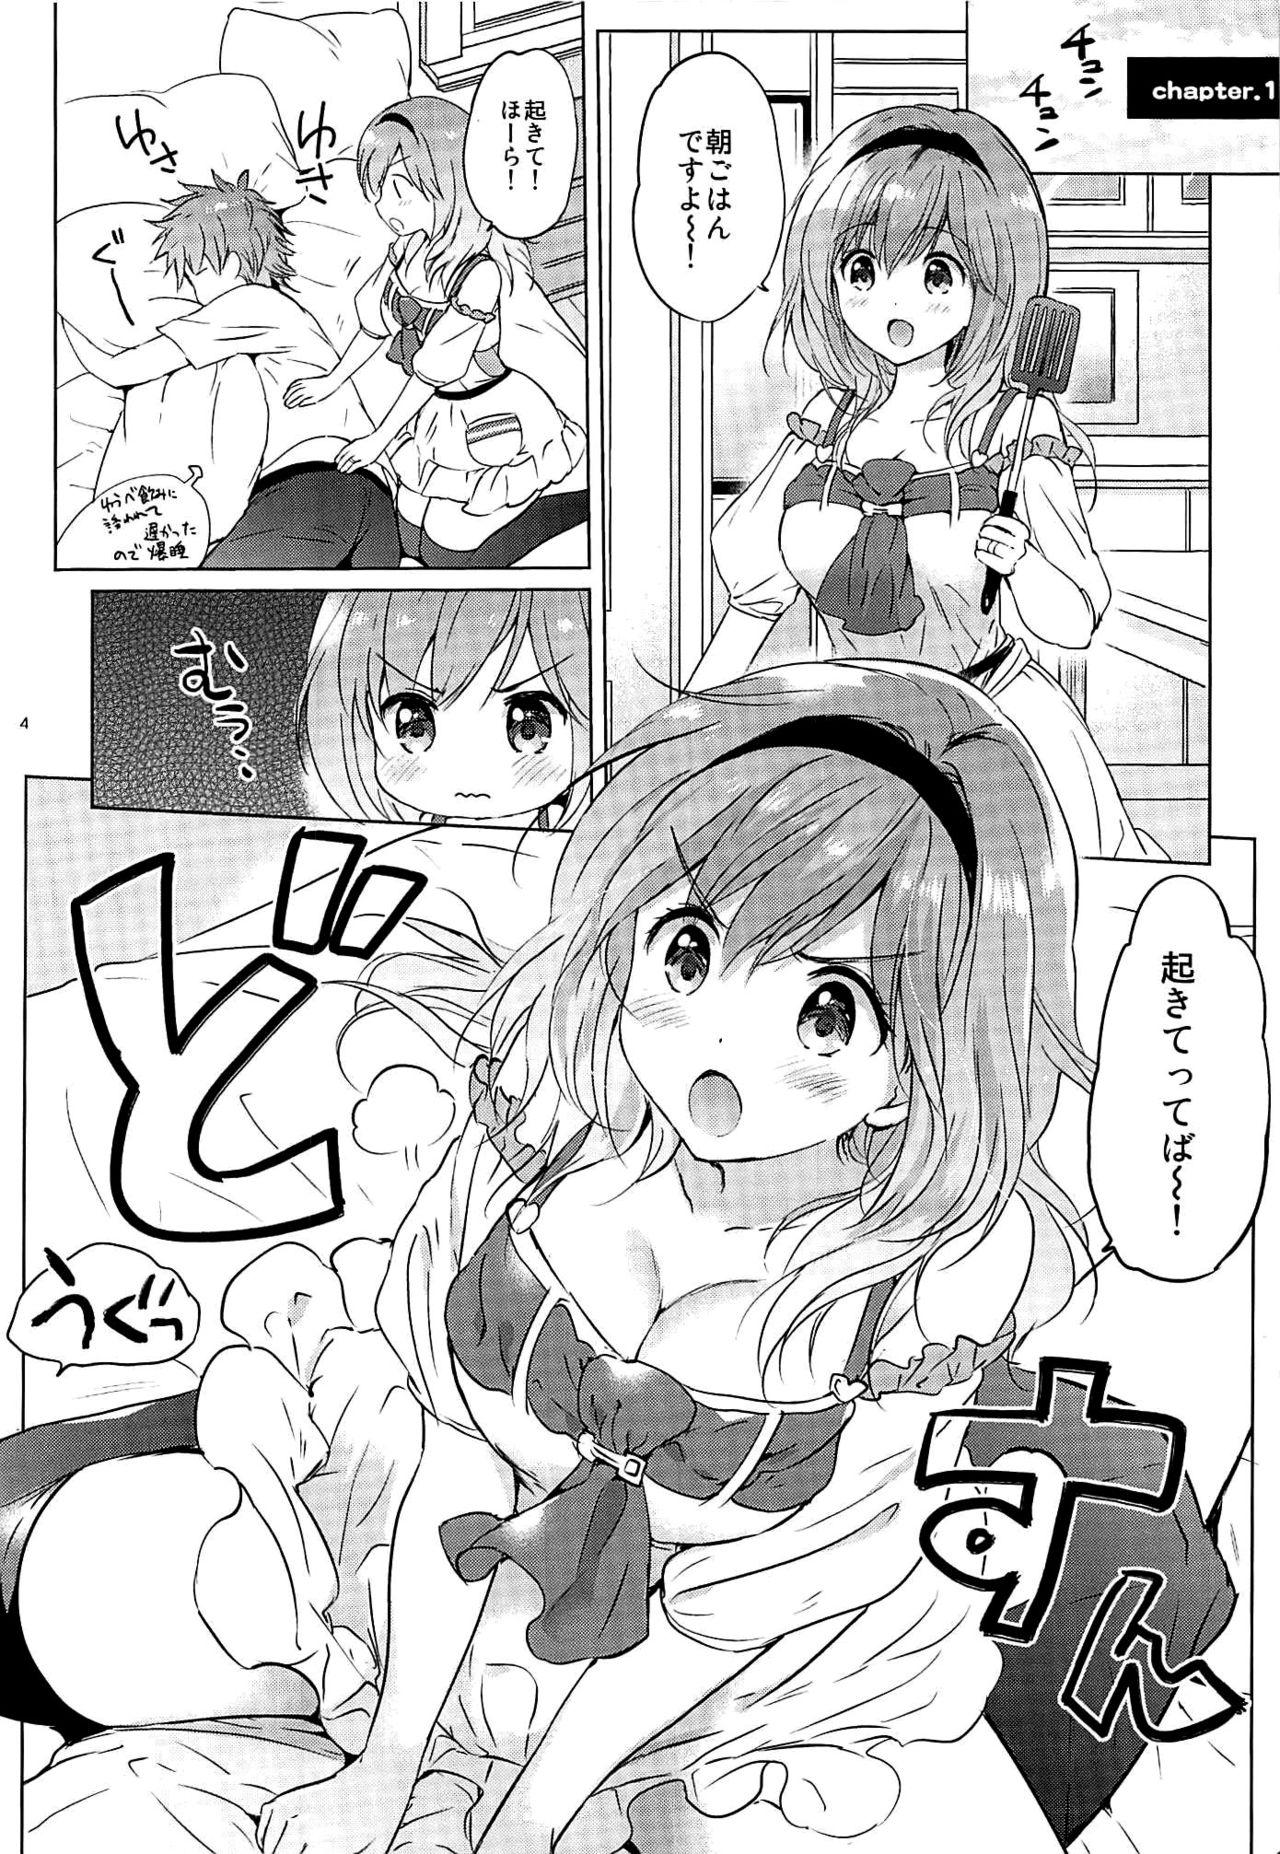 Siririca (C92) [Kurimomo (Tsukako)] Djeeta-chan 22-sai no Hibi (Granblue Fantasy) - Granblue fantasy Girlfriends - Page 3